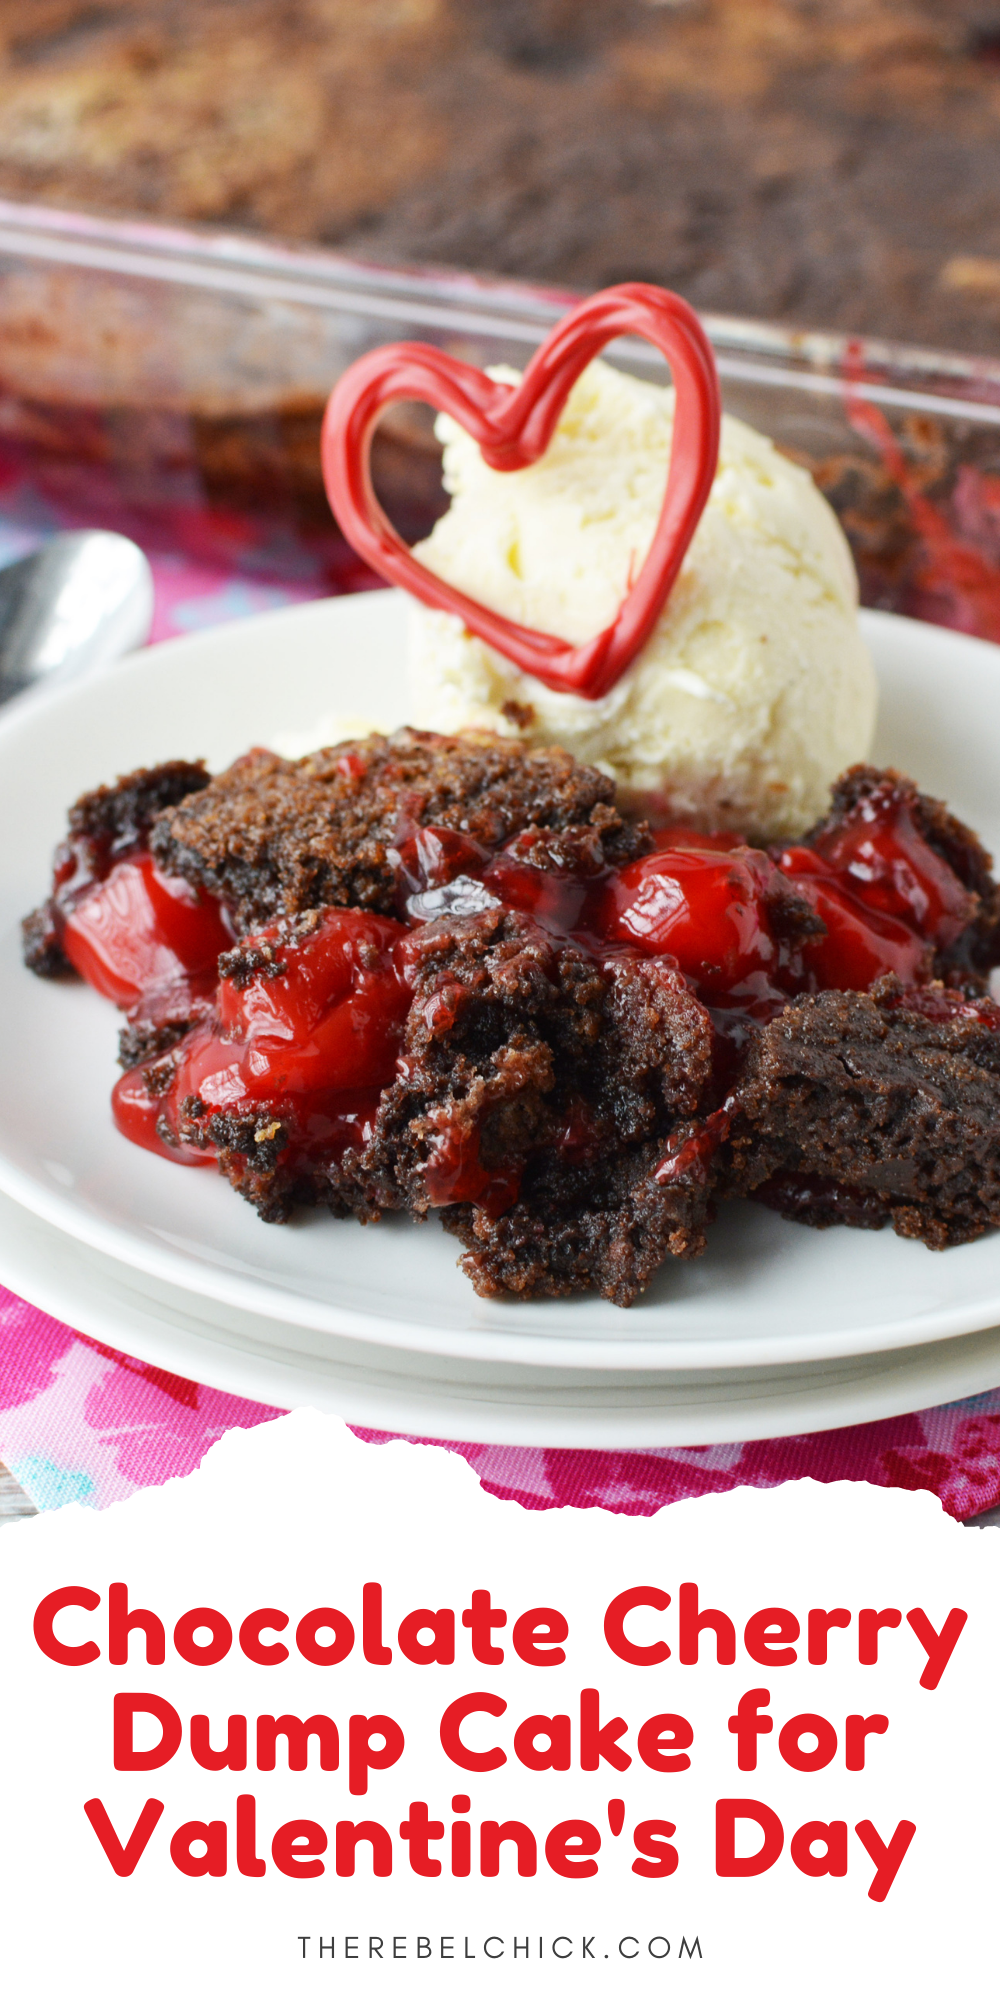 Chocolate Dump Cake with Cherries Recipe